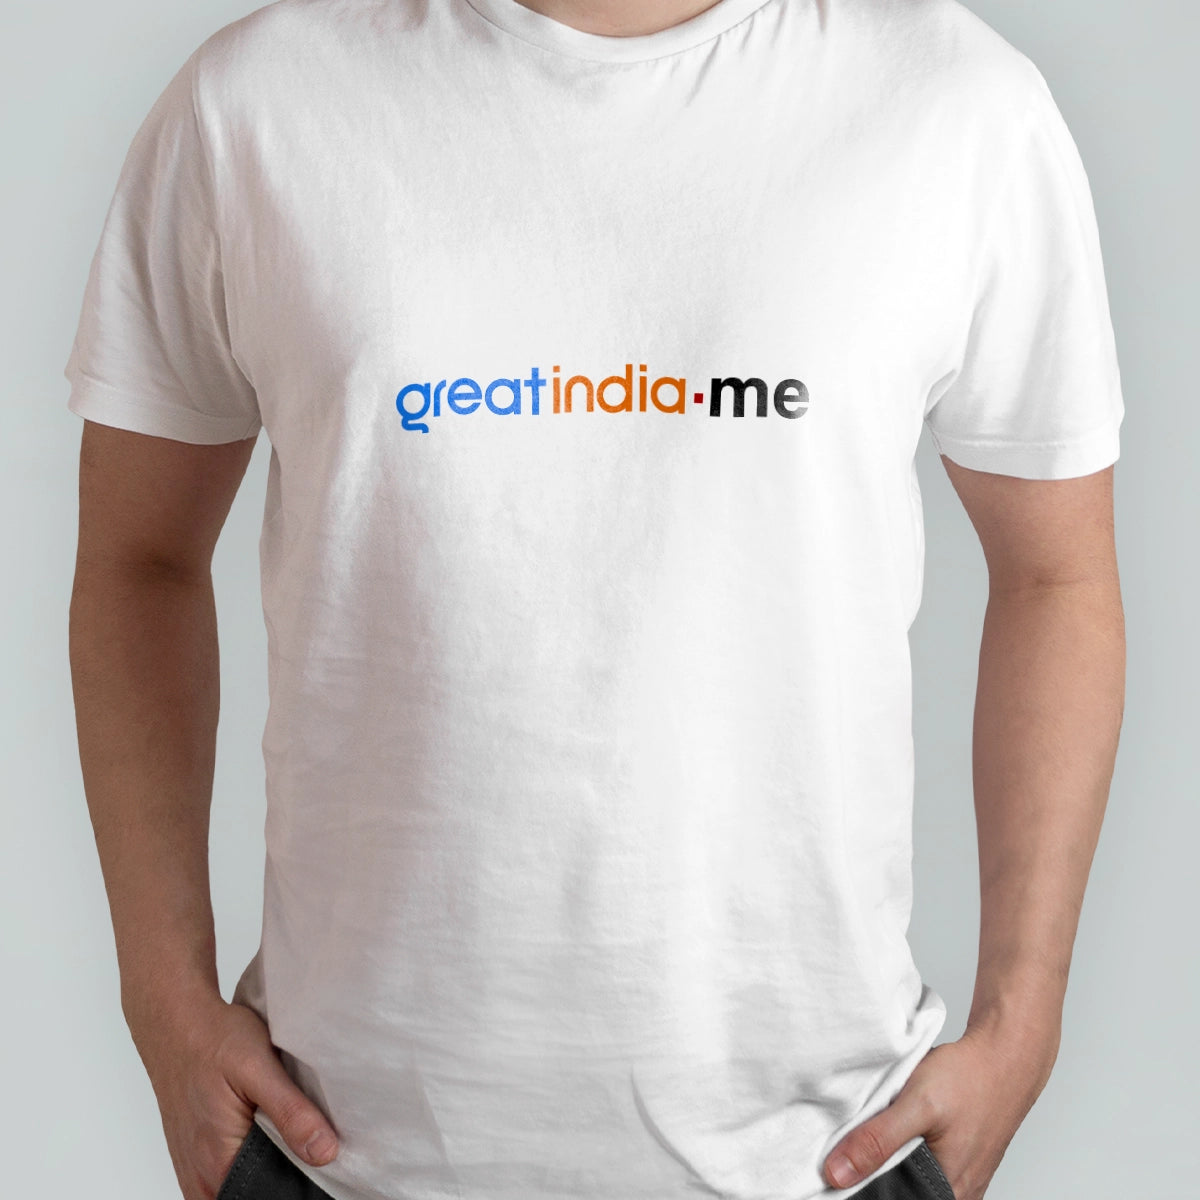 greatindia.me